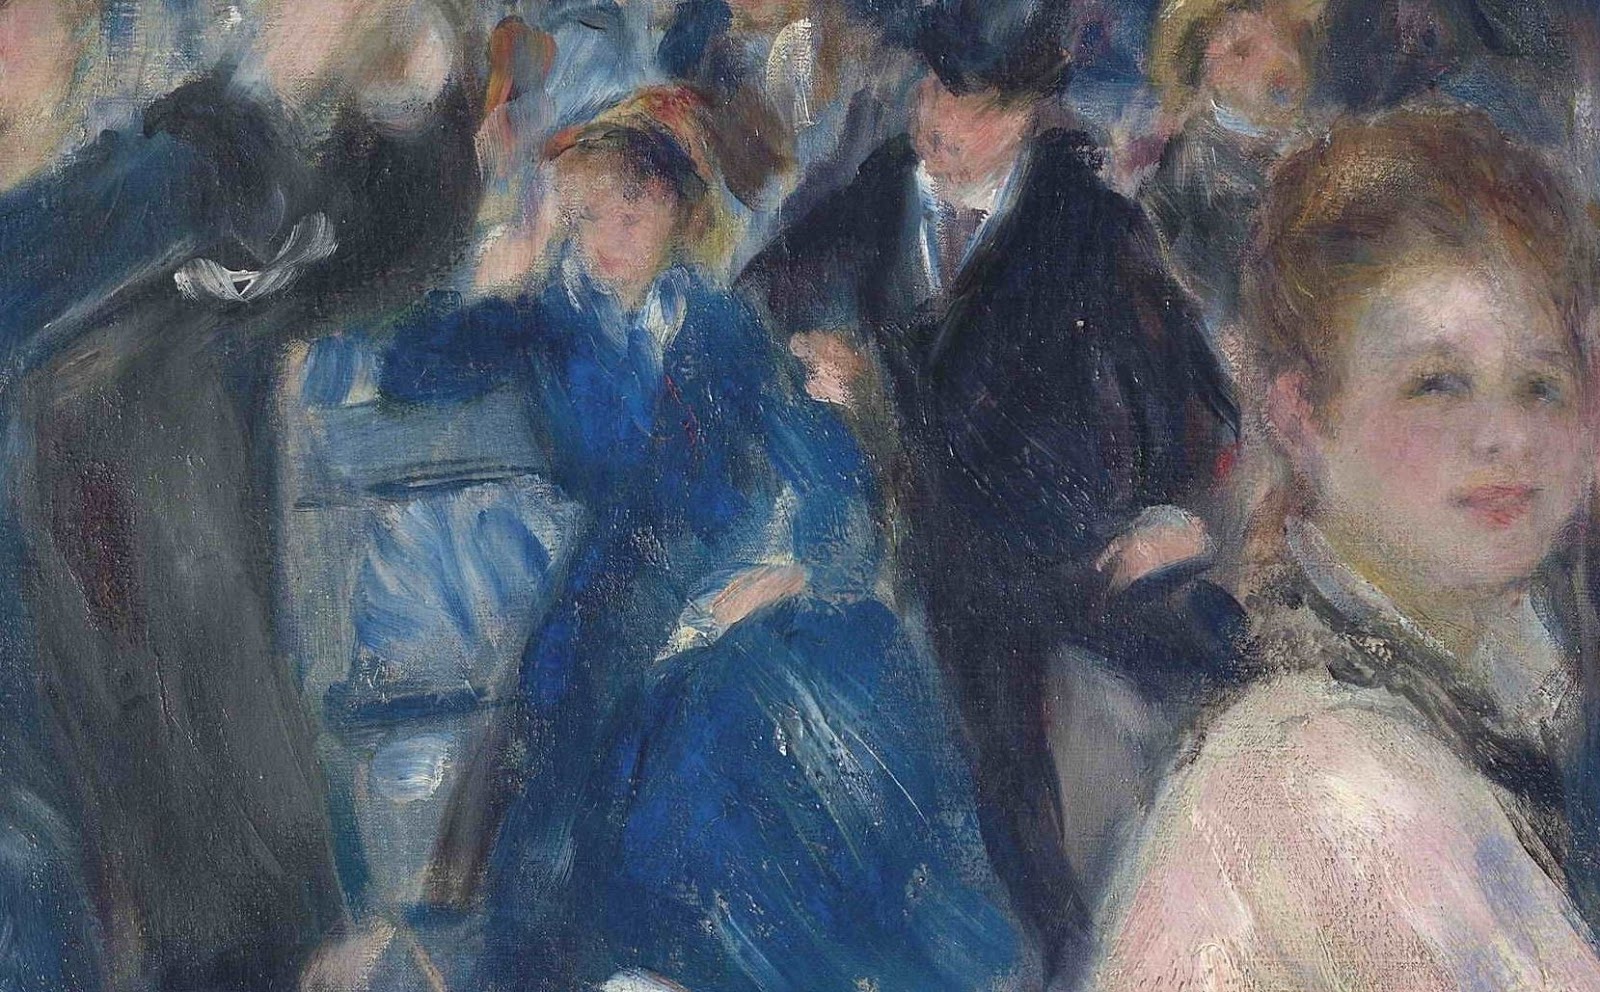 Pierre+Auguste+Renoir-1841-1-19 (432).JPG